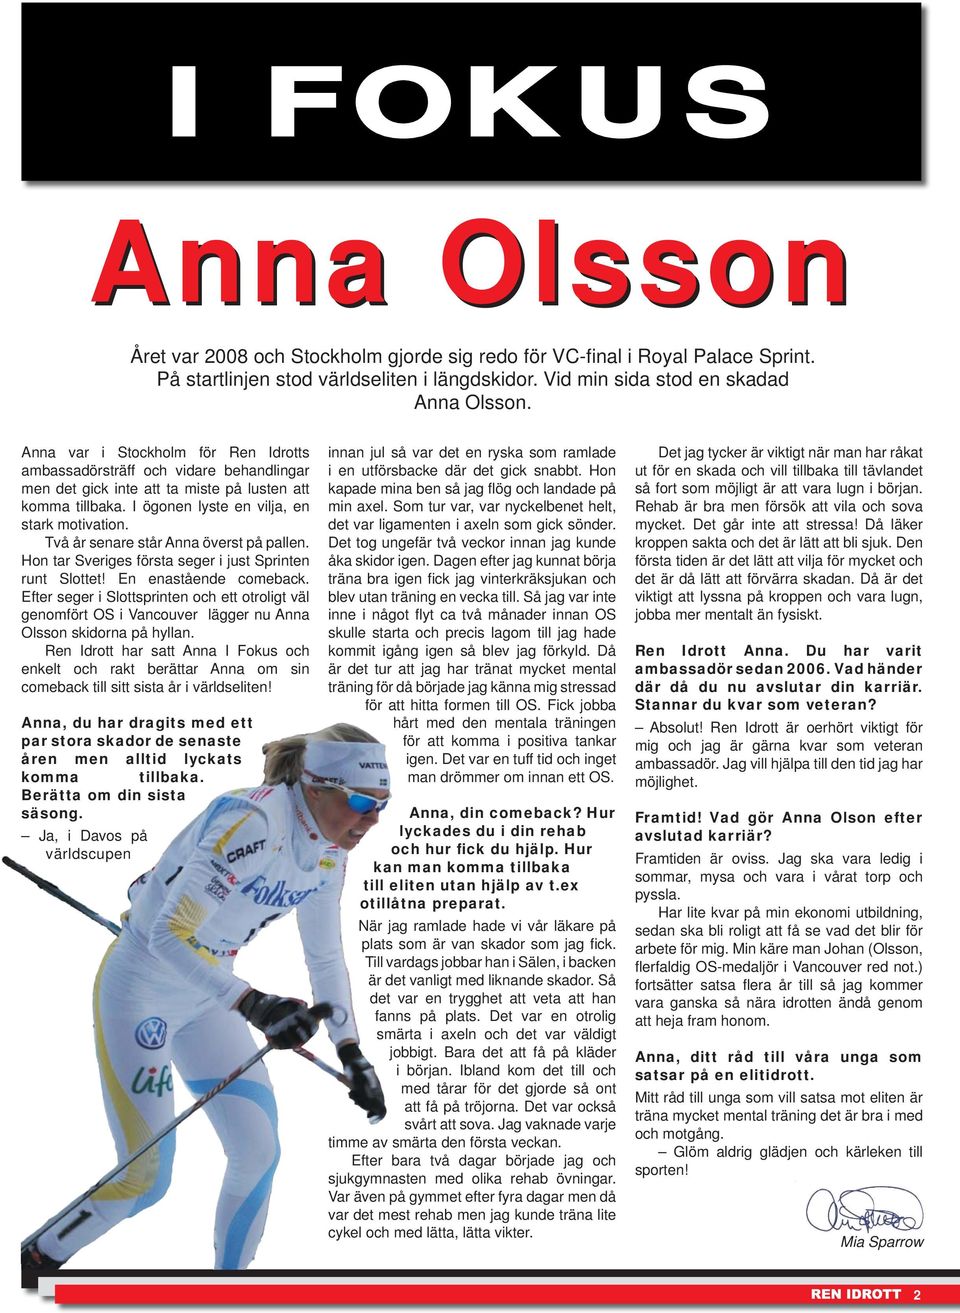 Två år senare står Anna överst på pallen. Hon tar Sveriges första seger i just Sprinten runt Slottet! En enastående comeback.